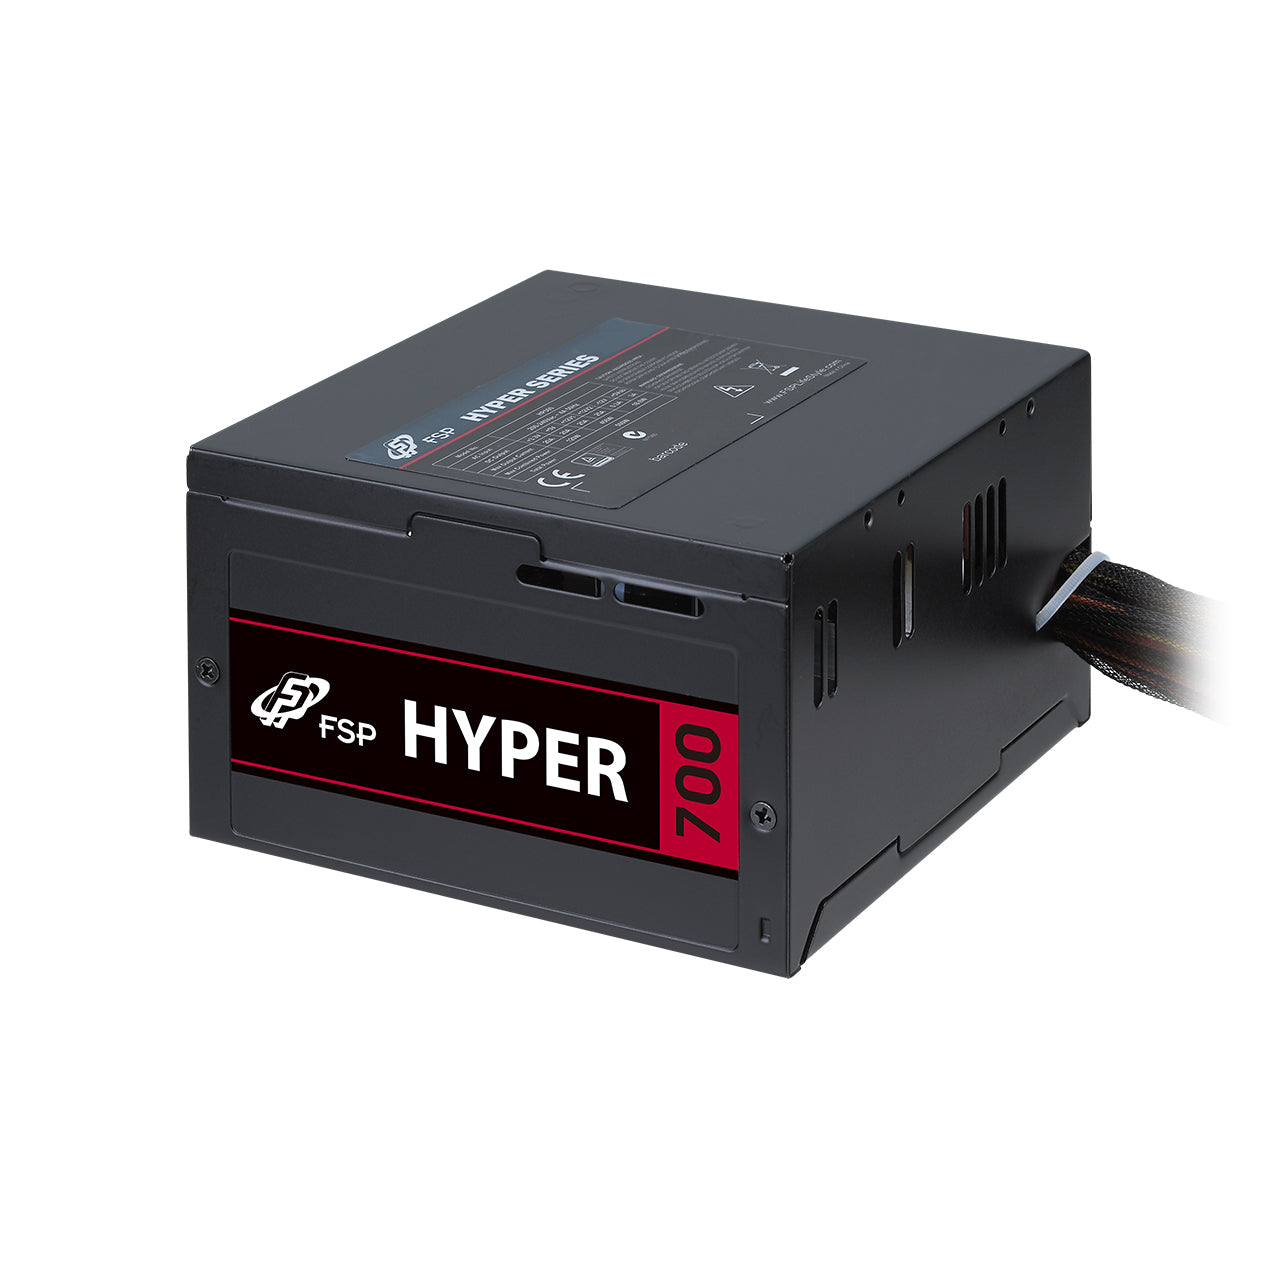 Hyper S 700W